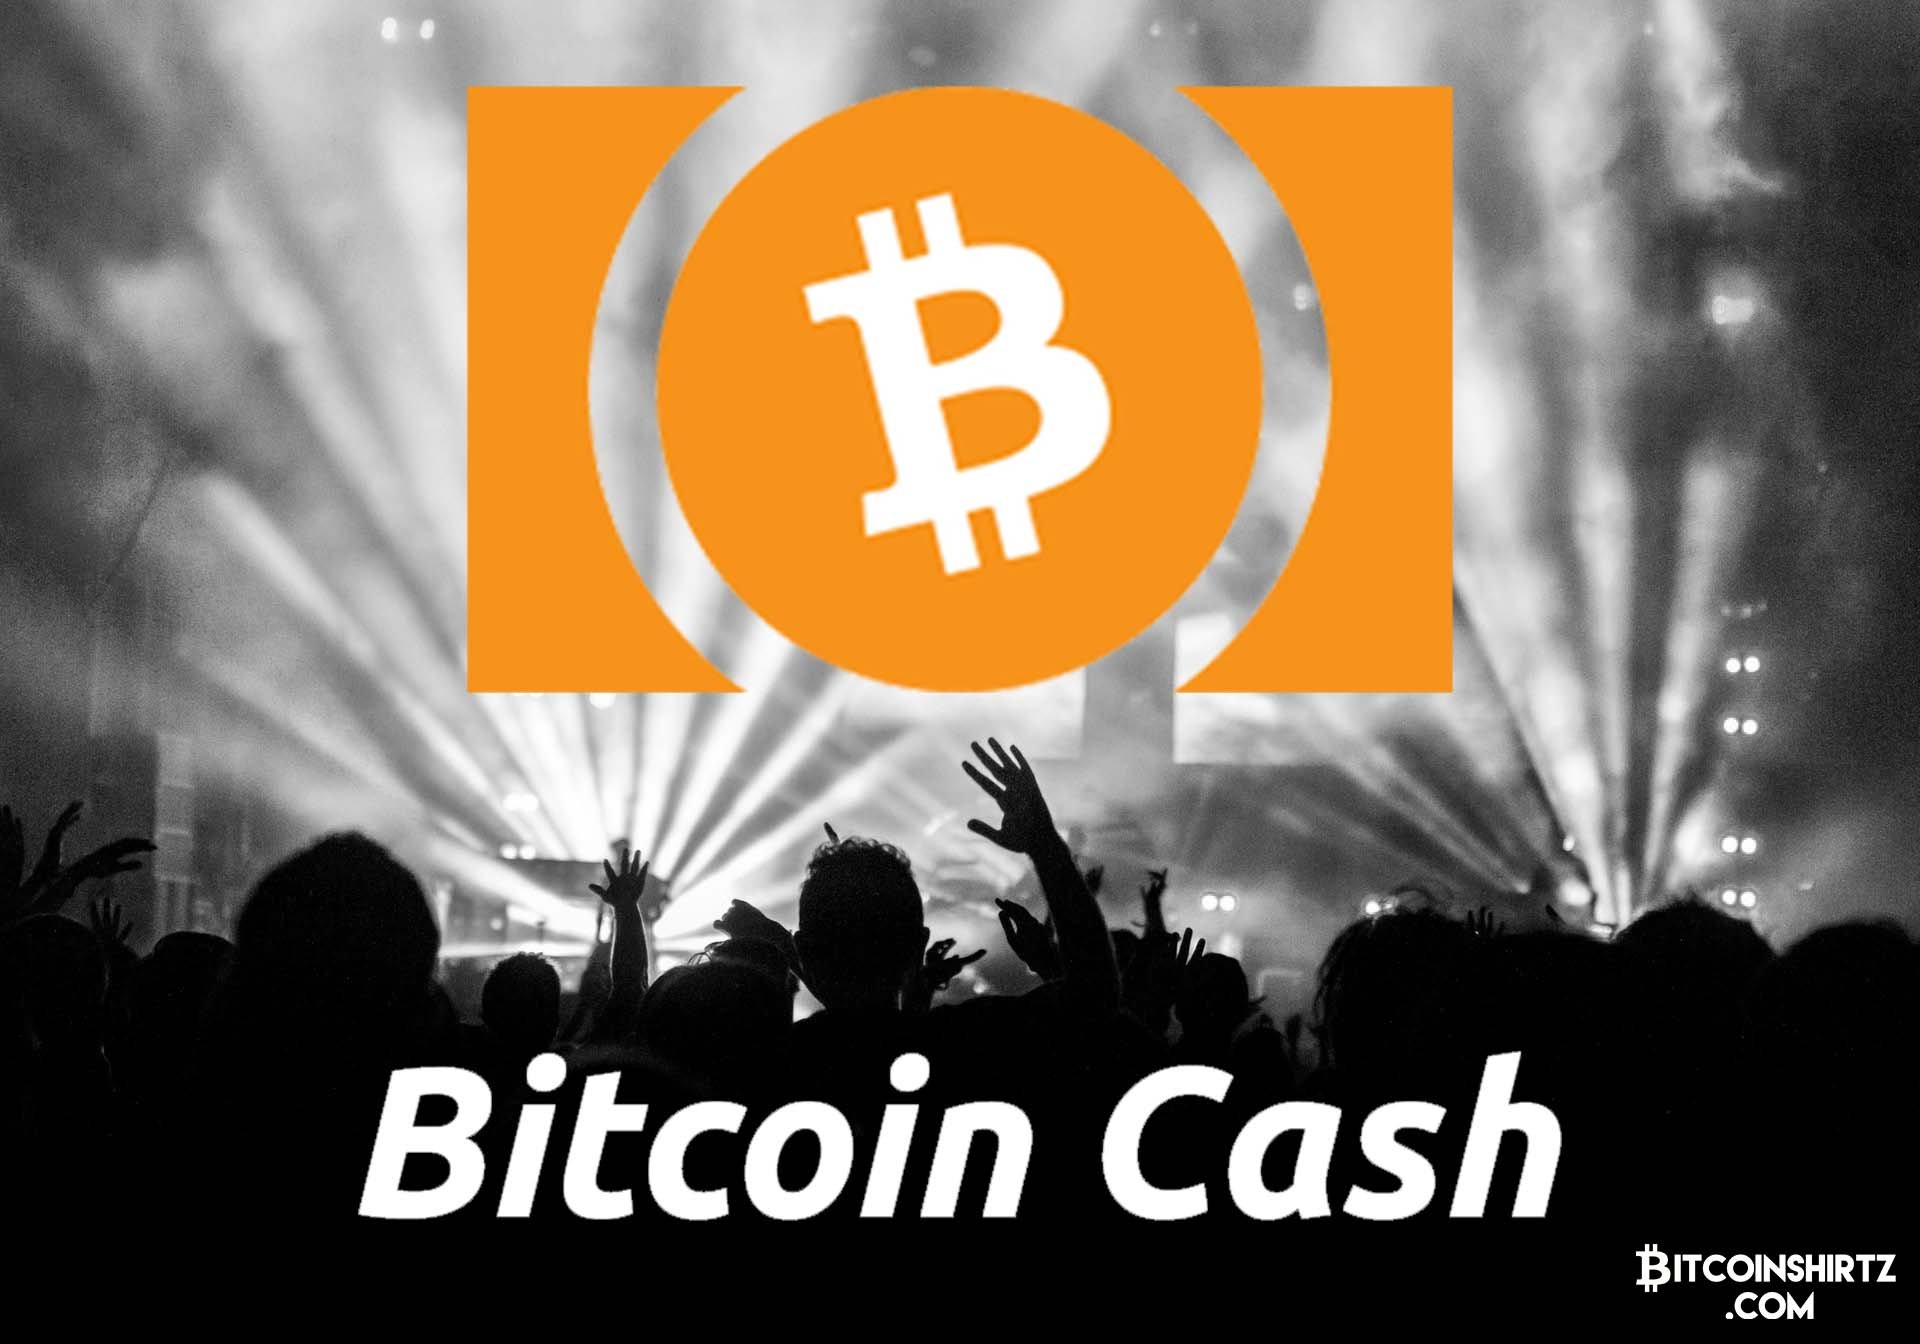 how can i claim my bitcoin cash